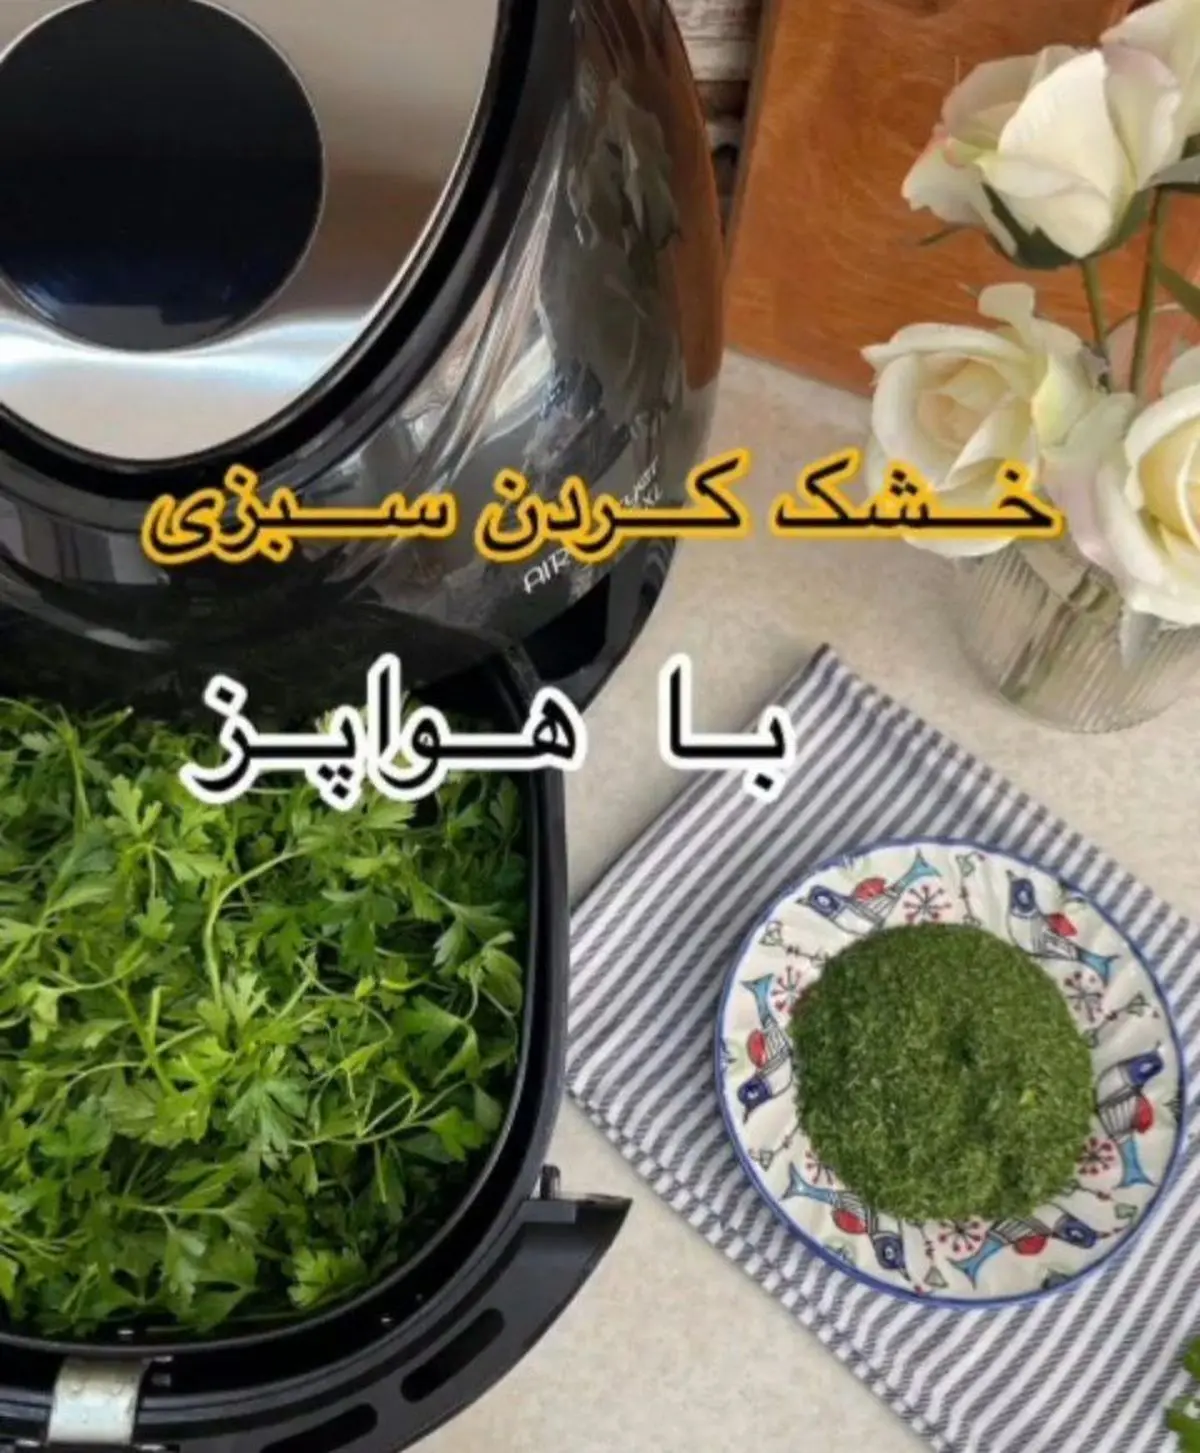 یه عمر سبزی رو اشتباه خشک میکردی! | روش خشک کردن سبزی با هواپز فقط توی ۱۰ دقیقه! + ویدئو